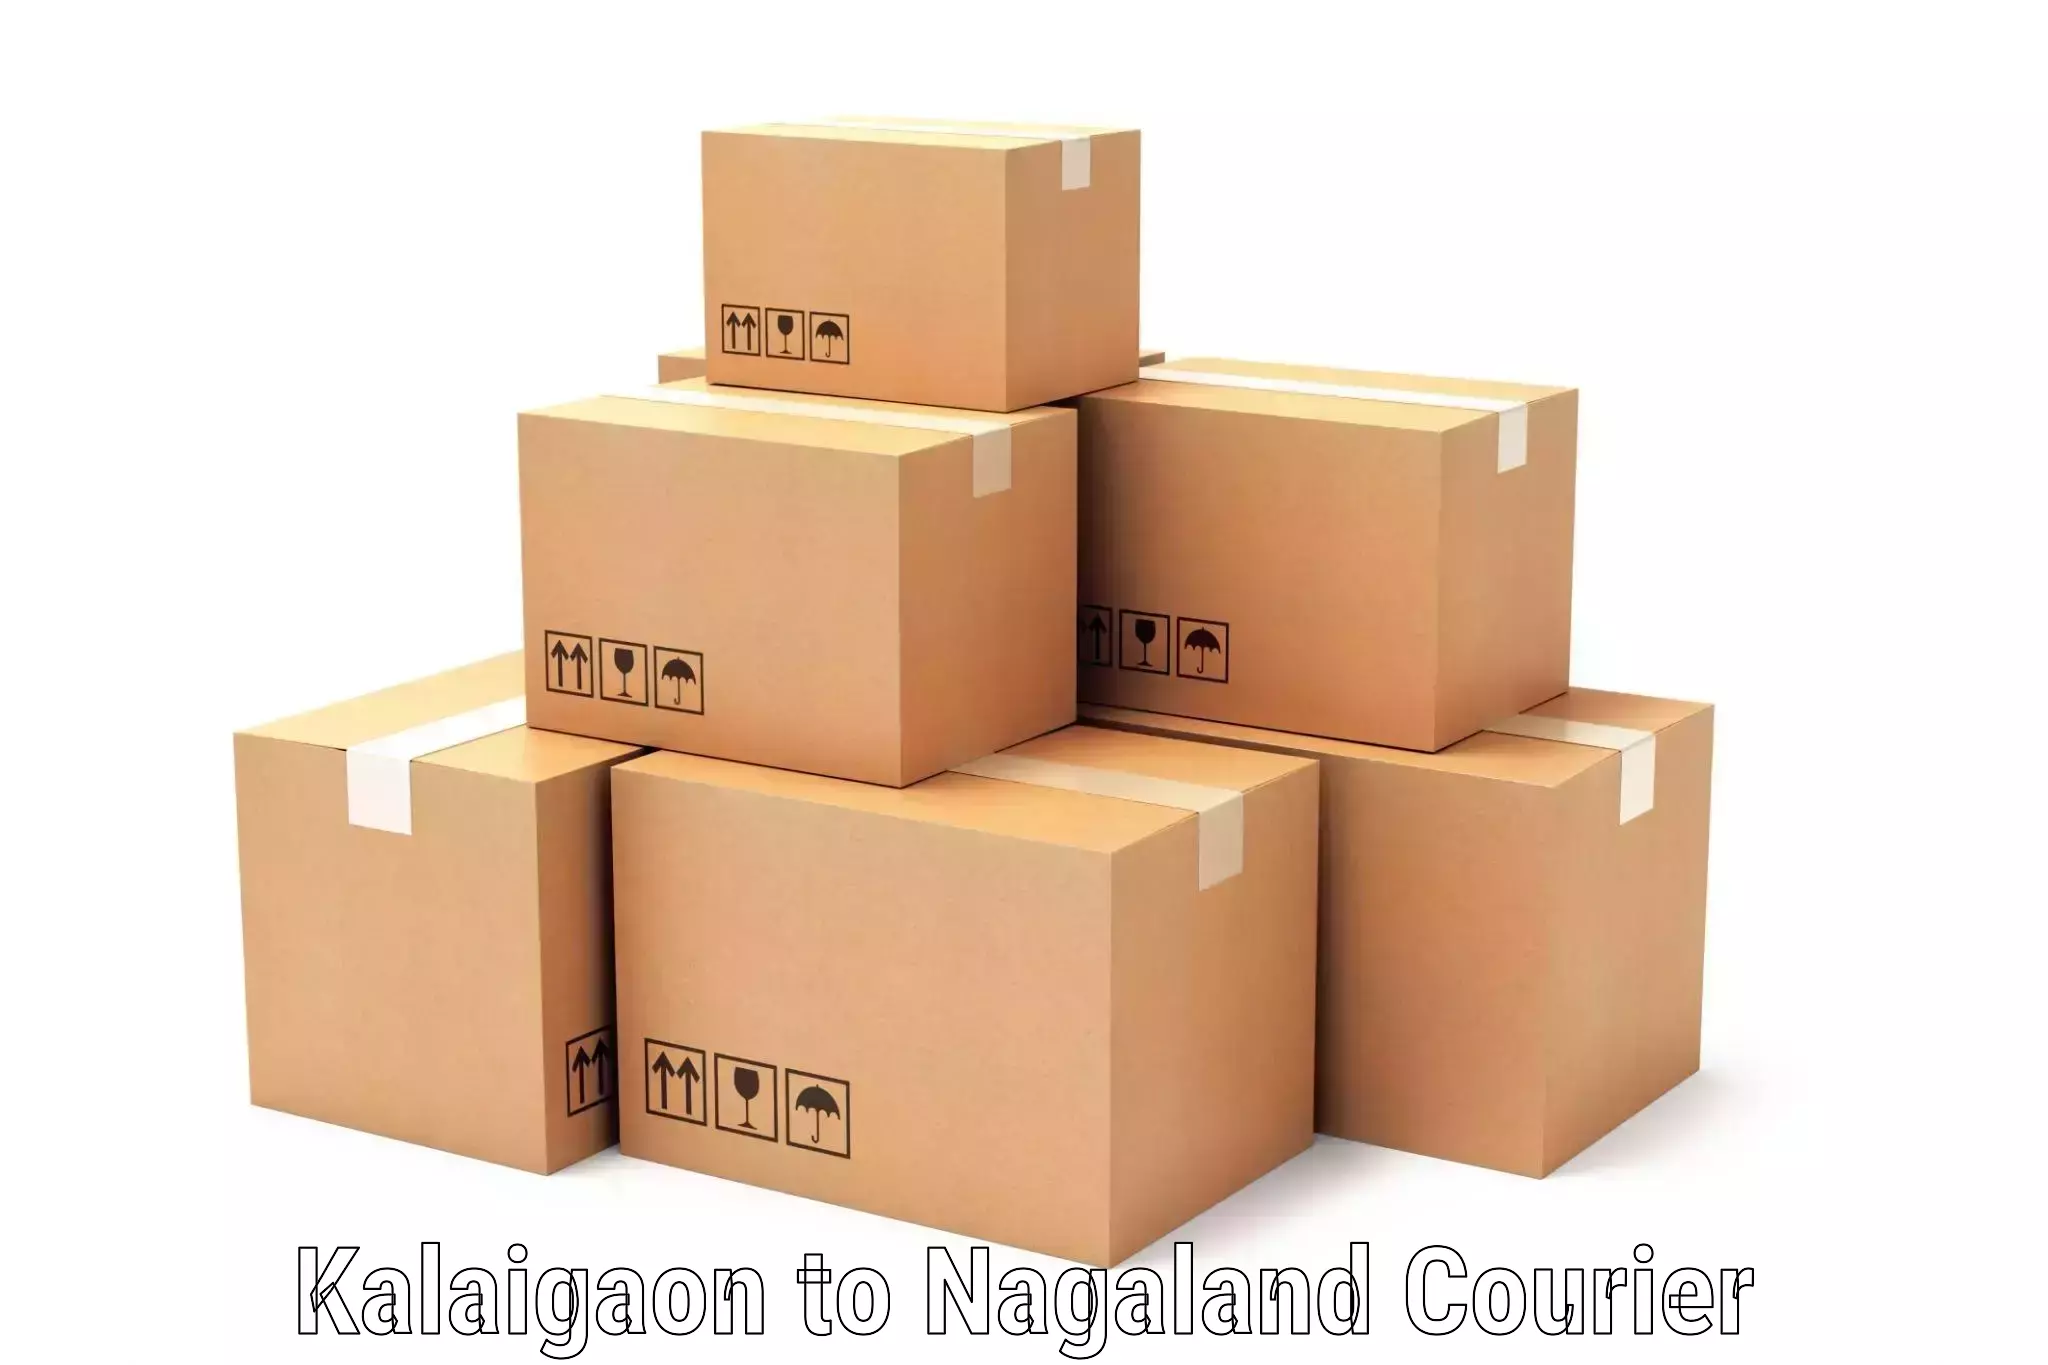 High-performance logistics Kalaigaon to NIT Nagaland